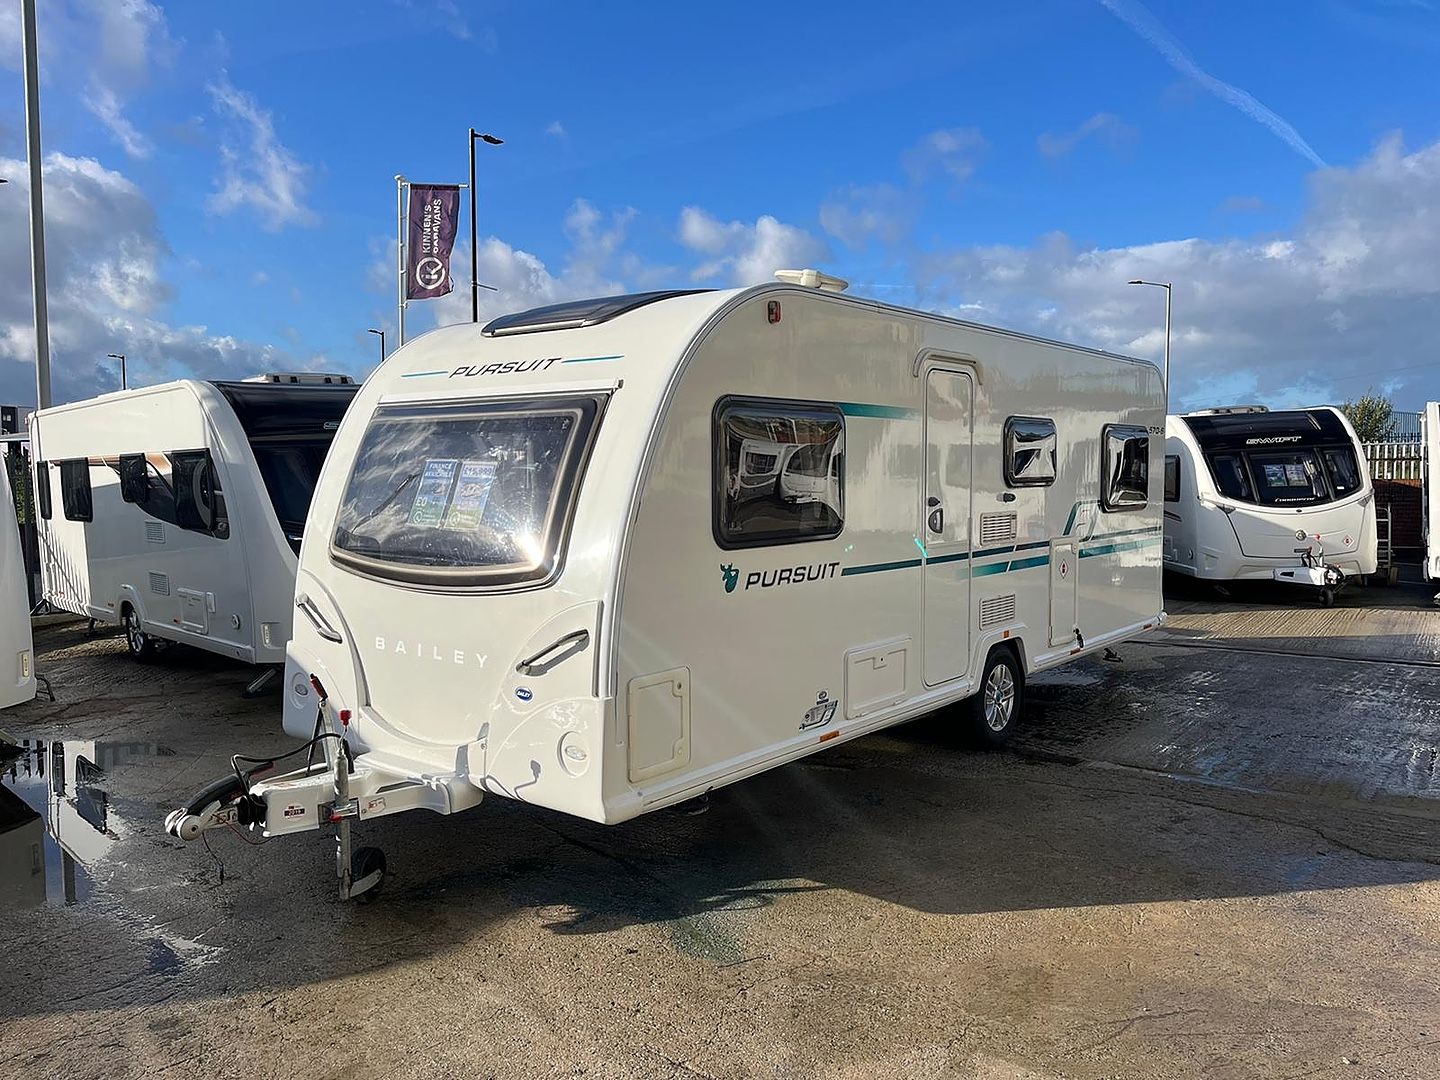 BaileyPursuit 570-6Touring Caravan for sale